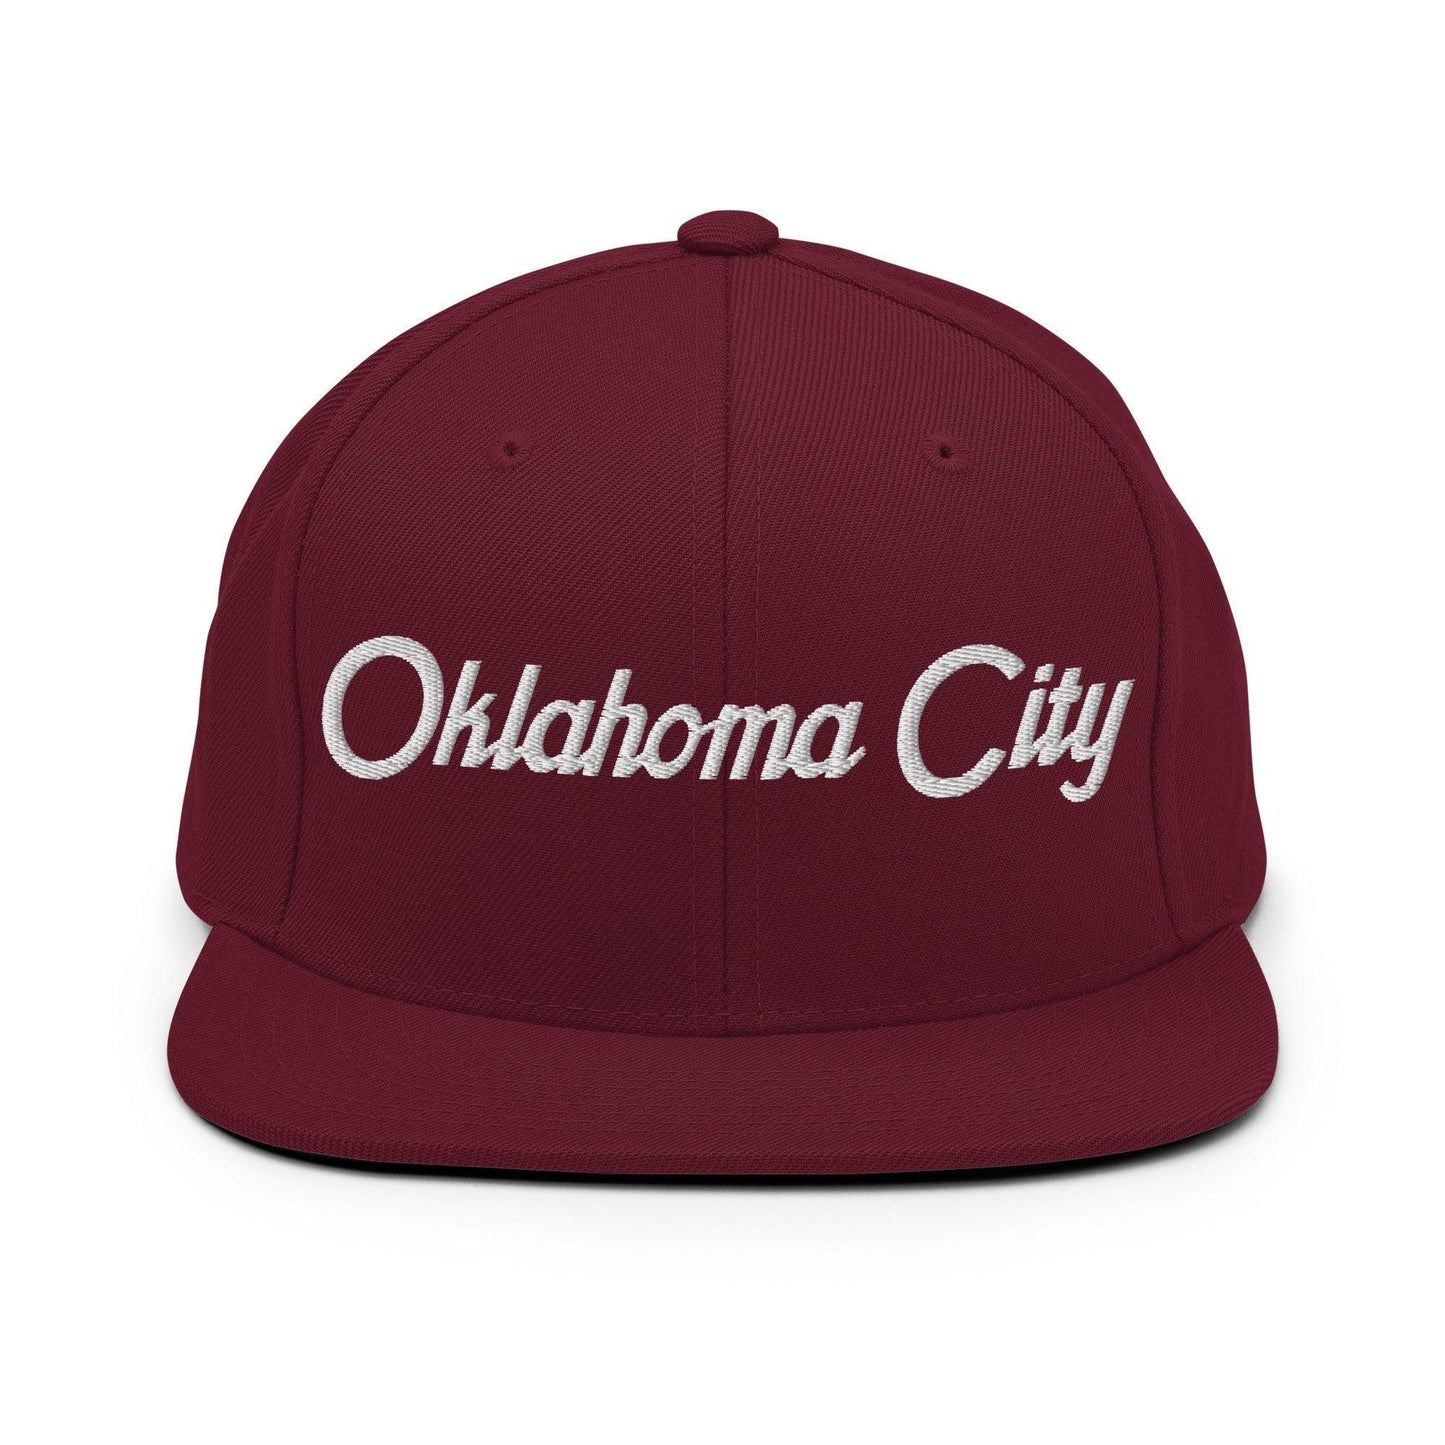 Oklahoma City Script Snapback Hat Maroon